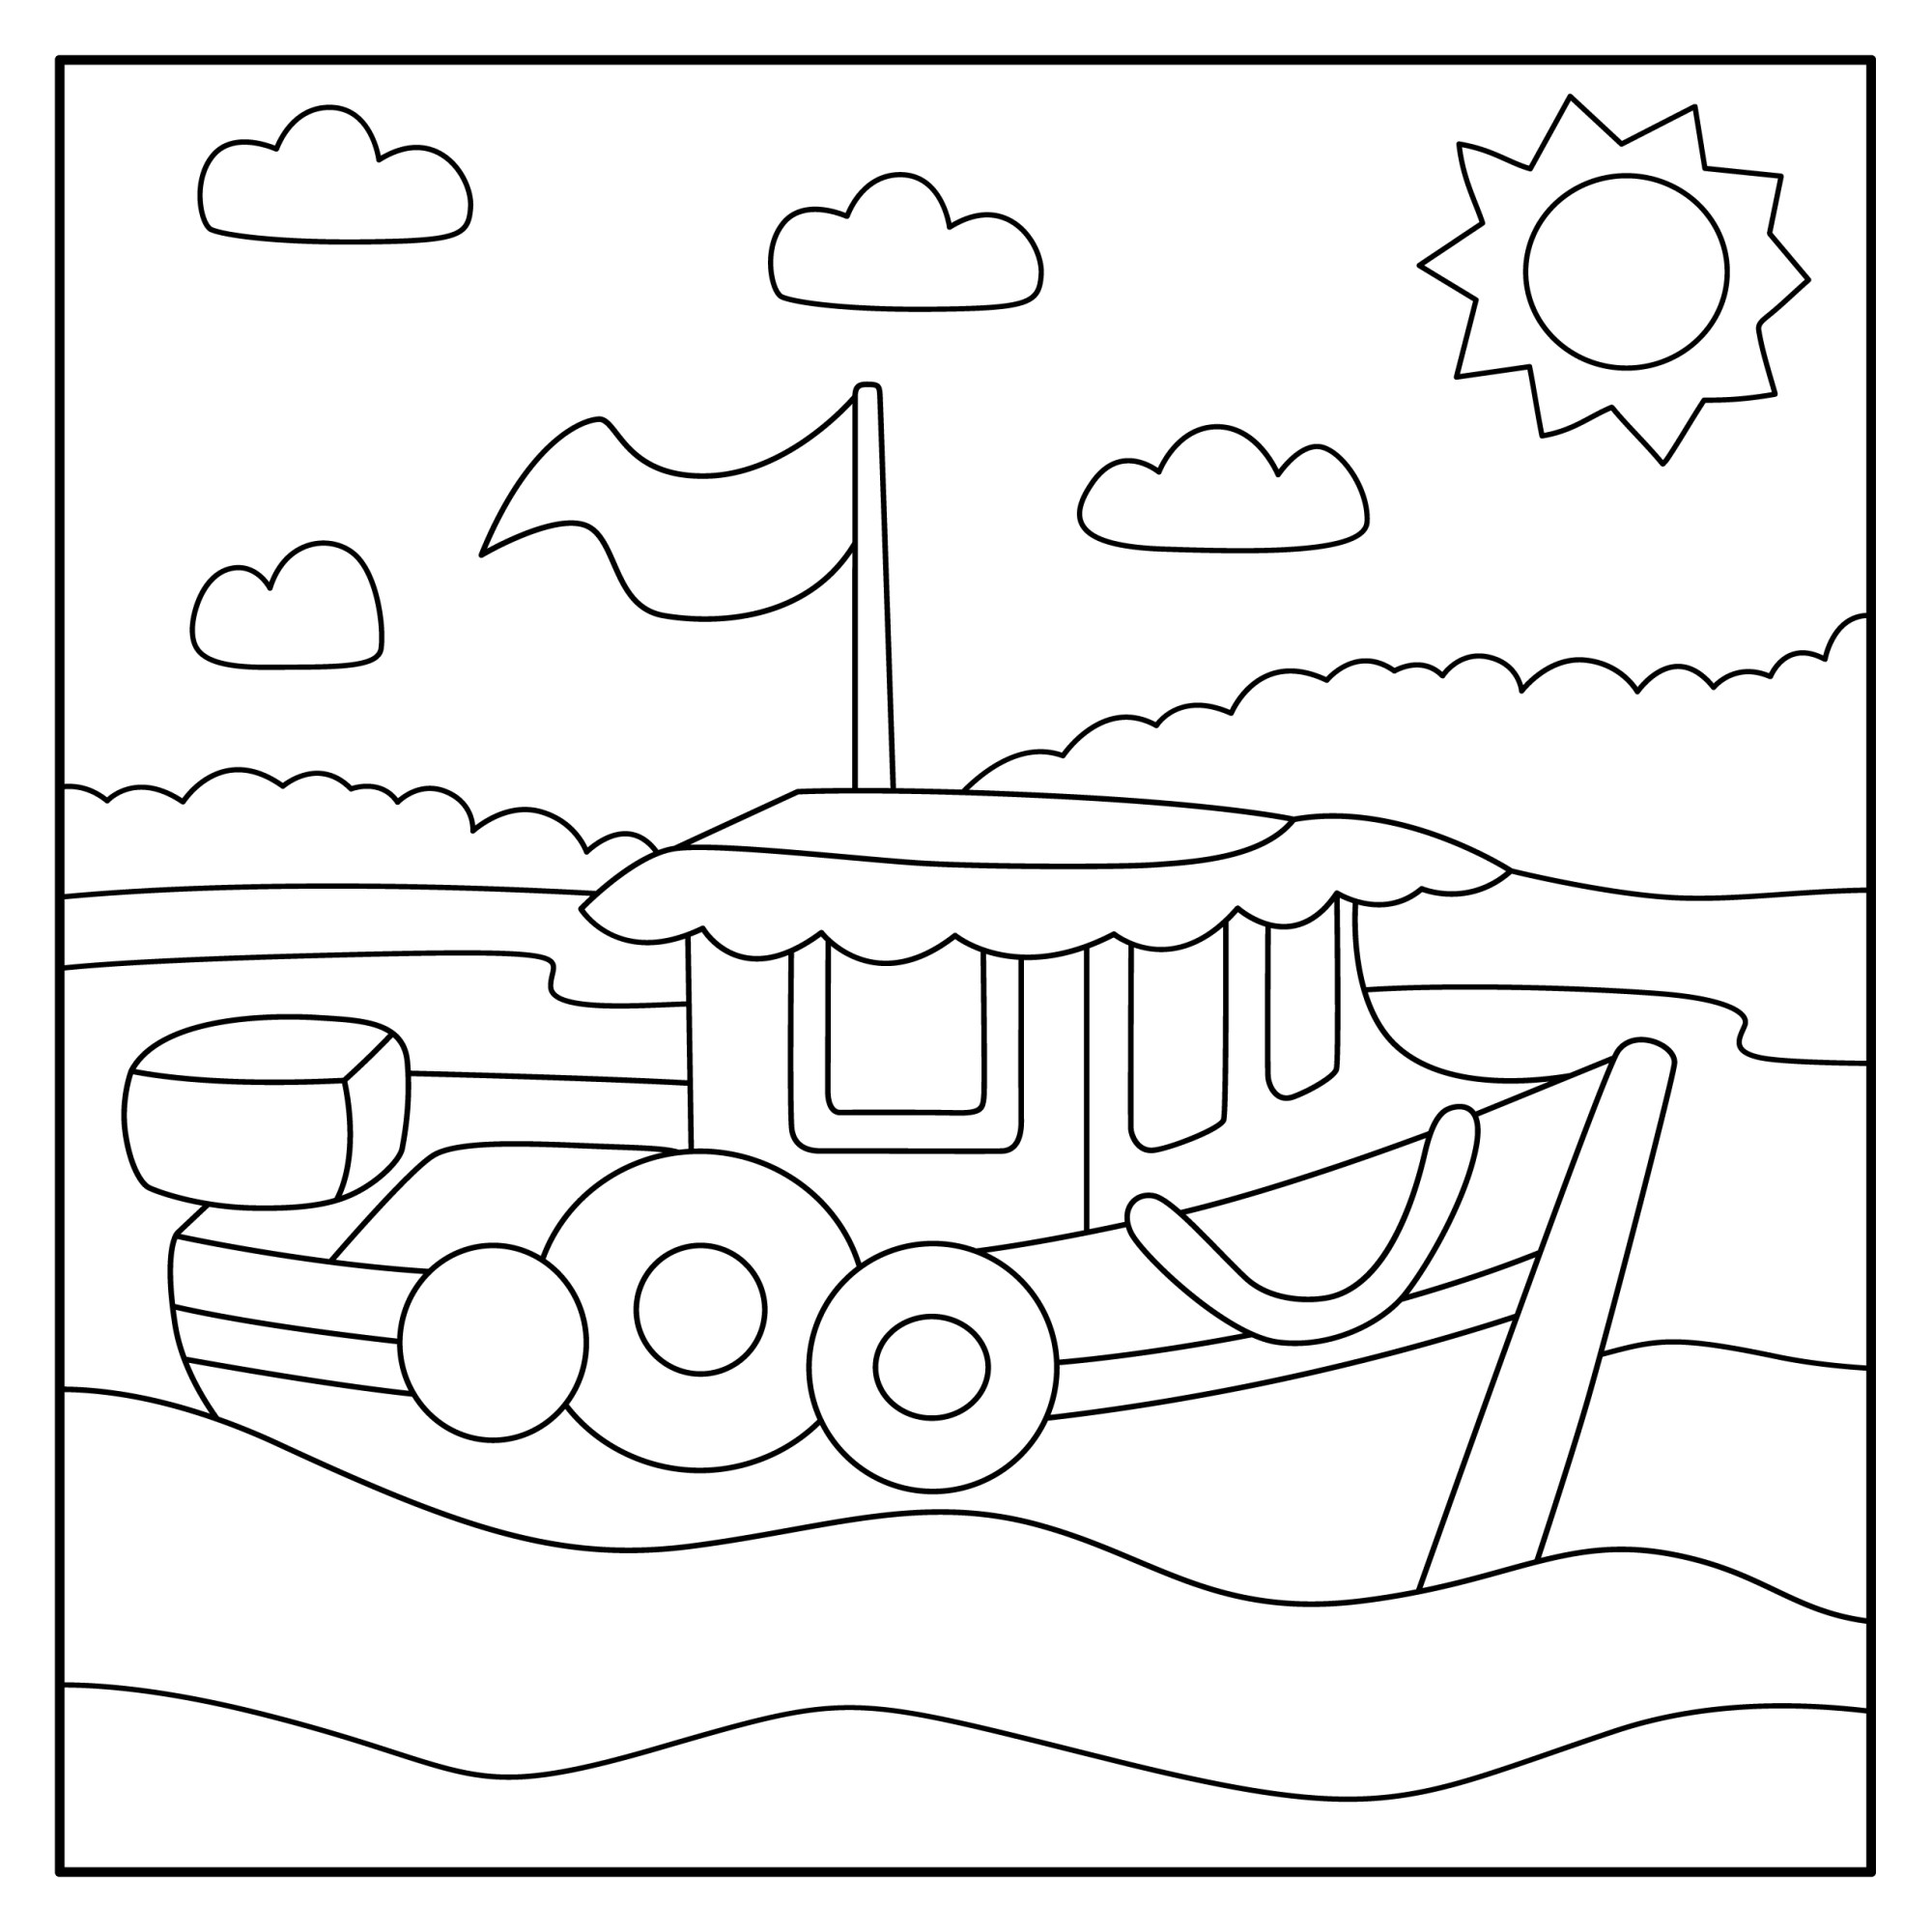 Раскраска для детей: корабль с флагом «Морские приключения»